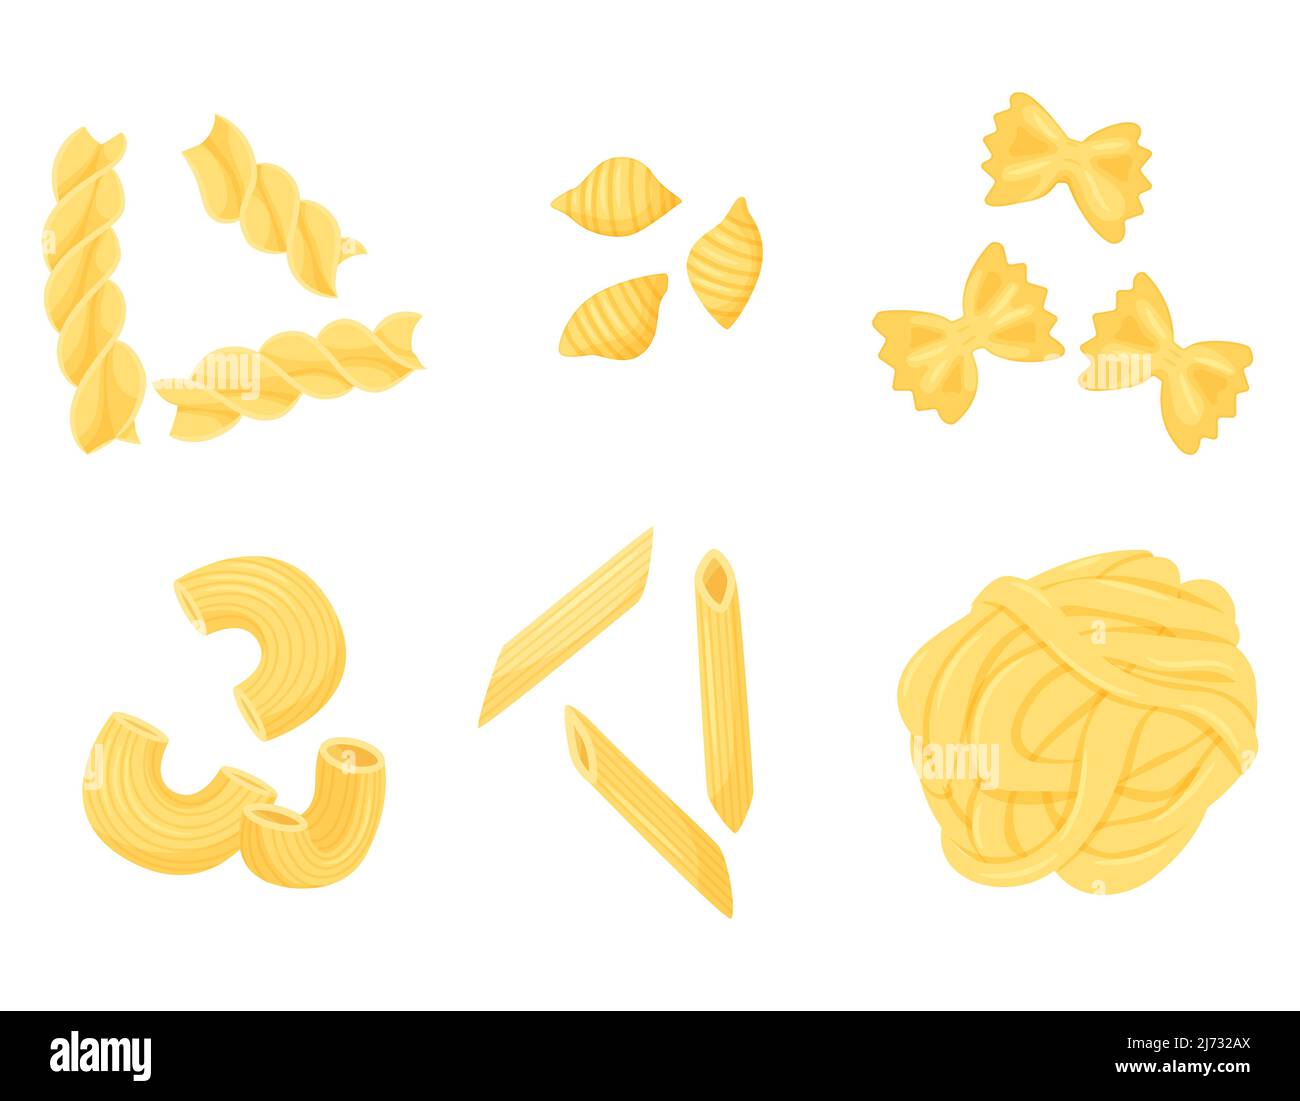 Eine Reihe von verschiedenen Arten von Pasta. Penne, Farfalle, Fettuccin, Conchiglie, Gomiti rigatti, Fusilli. Flach, im Cartoon-Stil. Die Farbvektordarstellung ist Stock Vektor